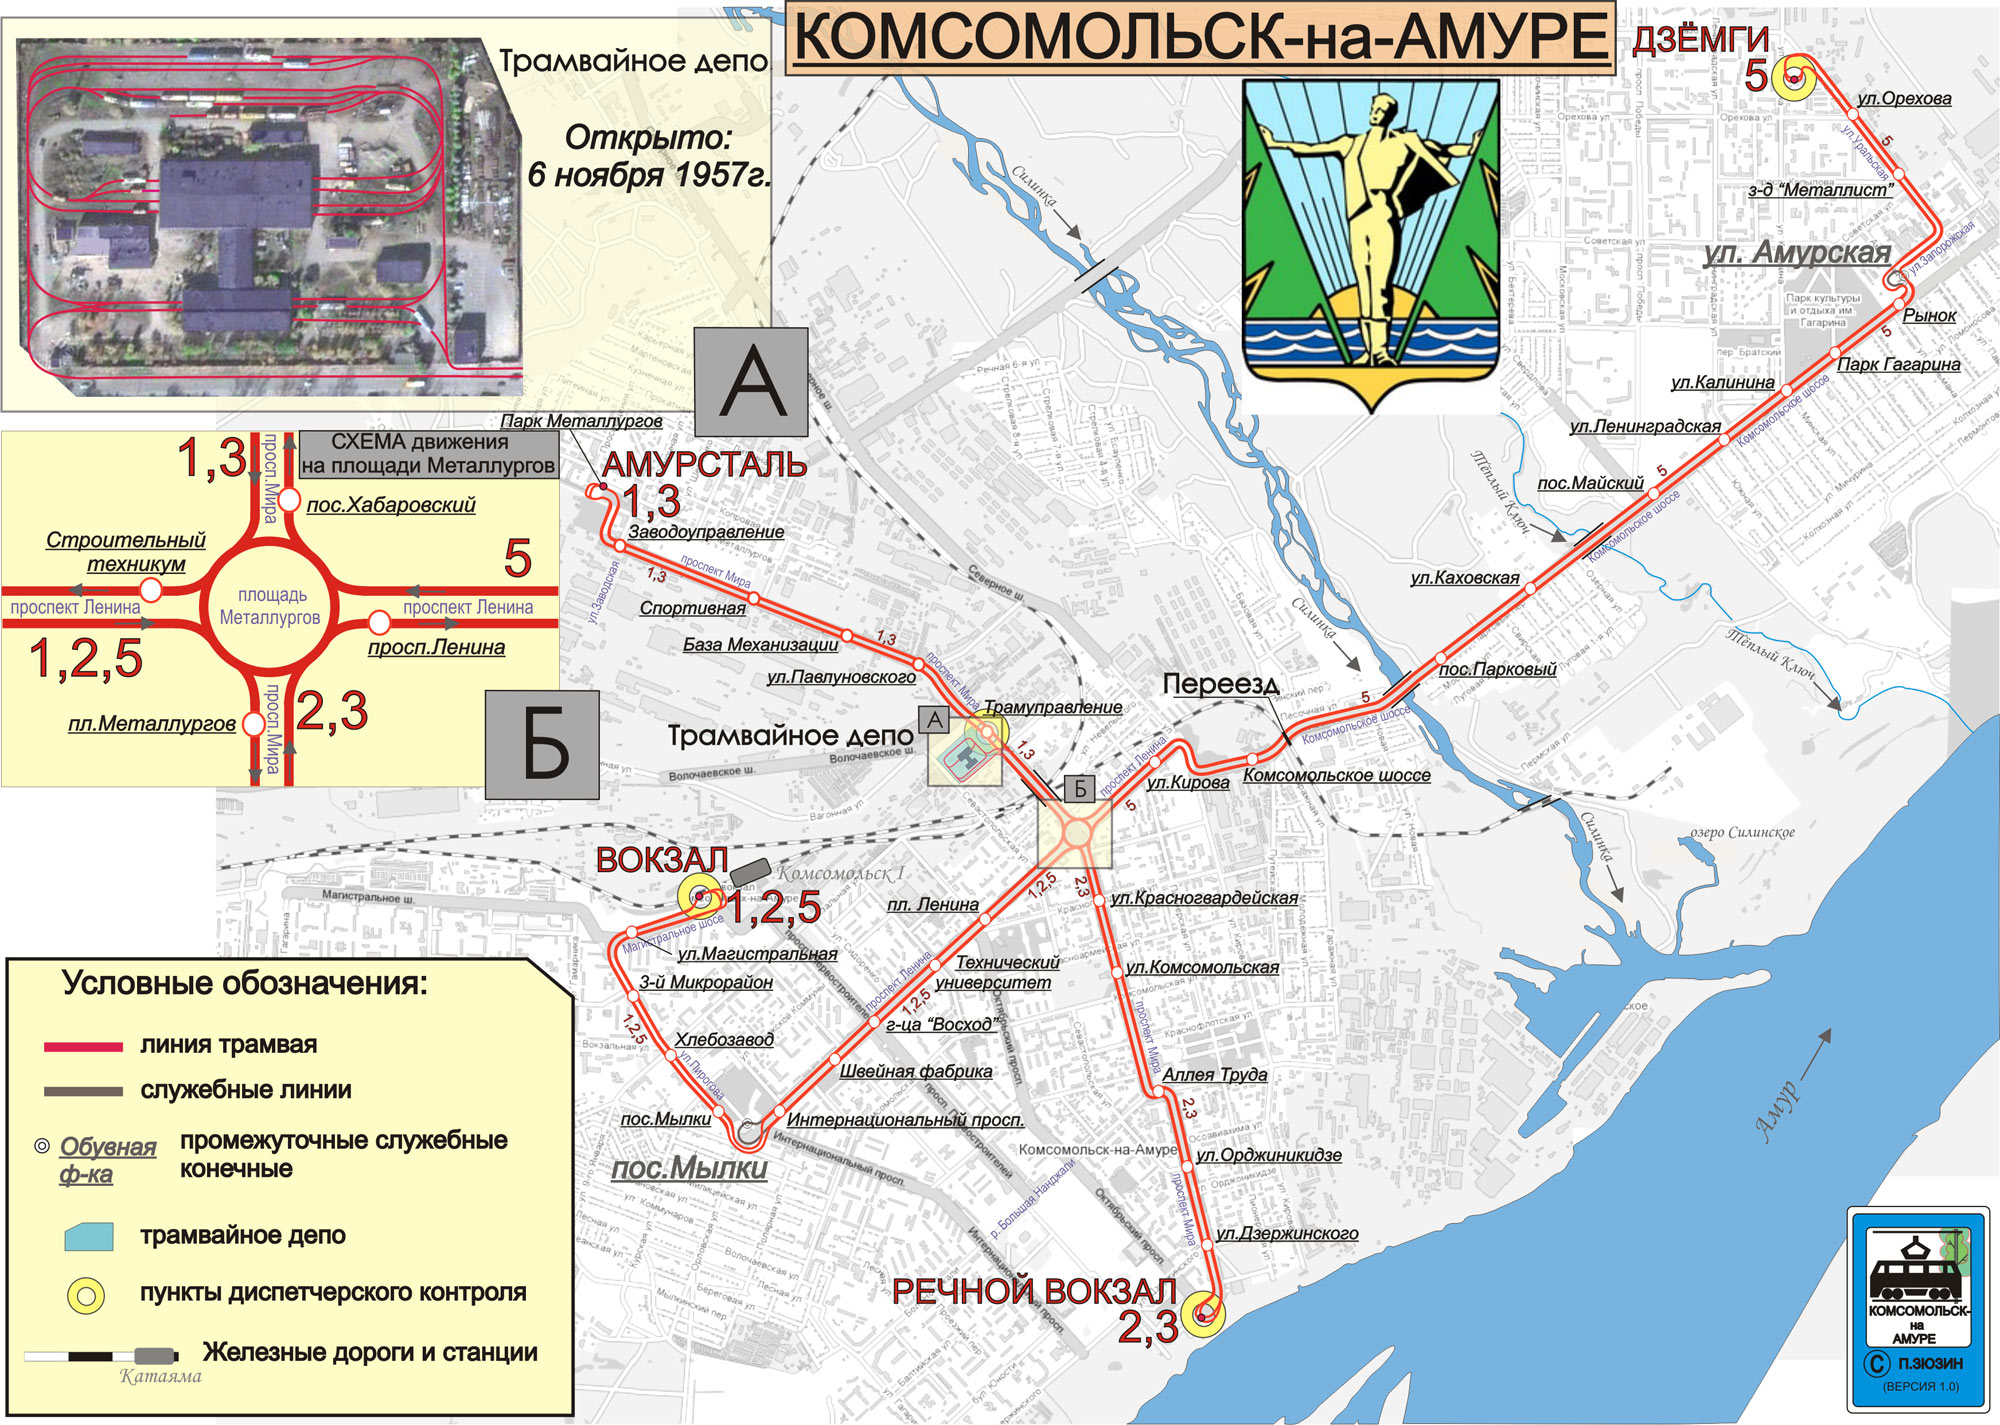 Komsomolsk-on-Amur — Maps